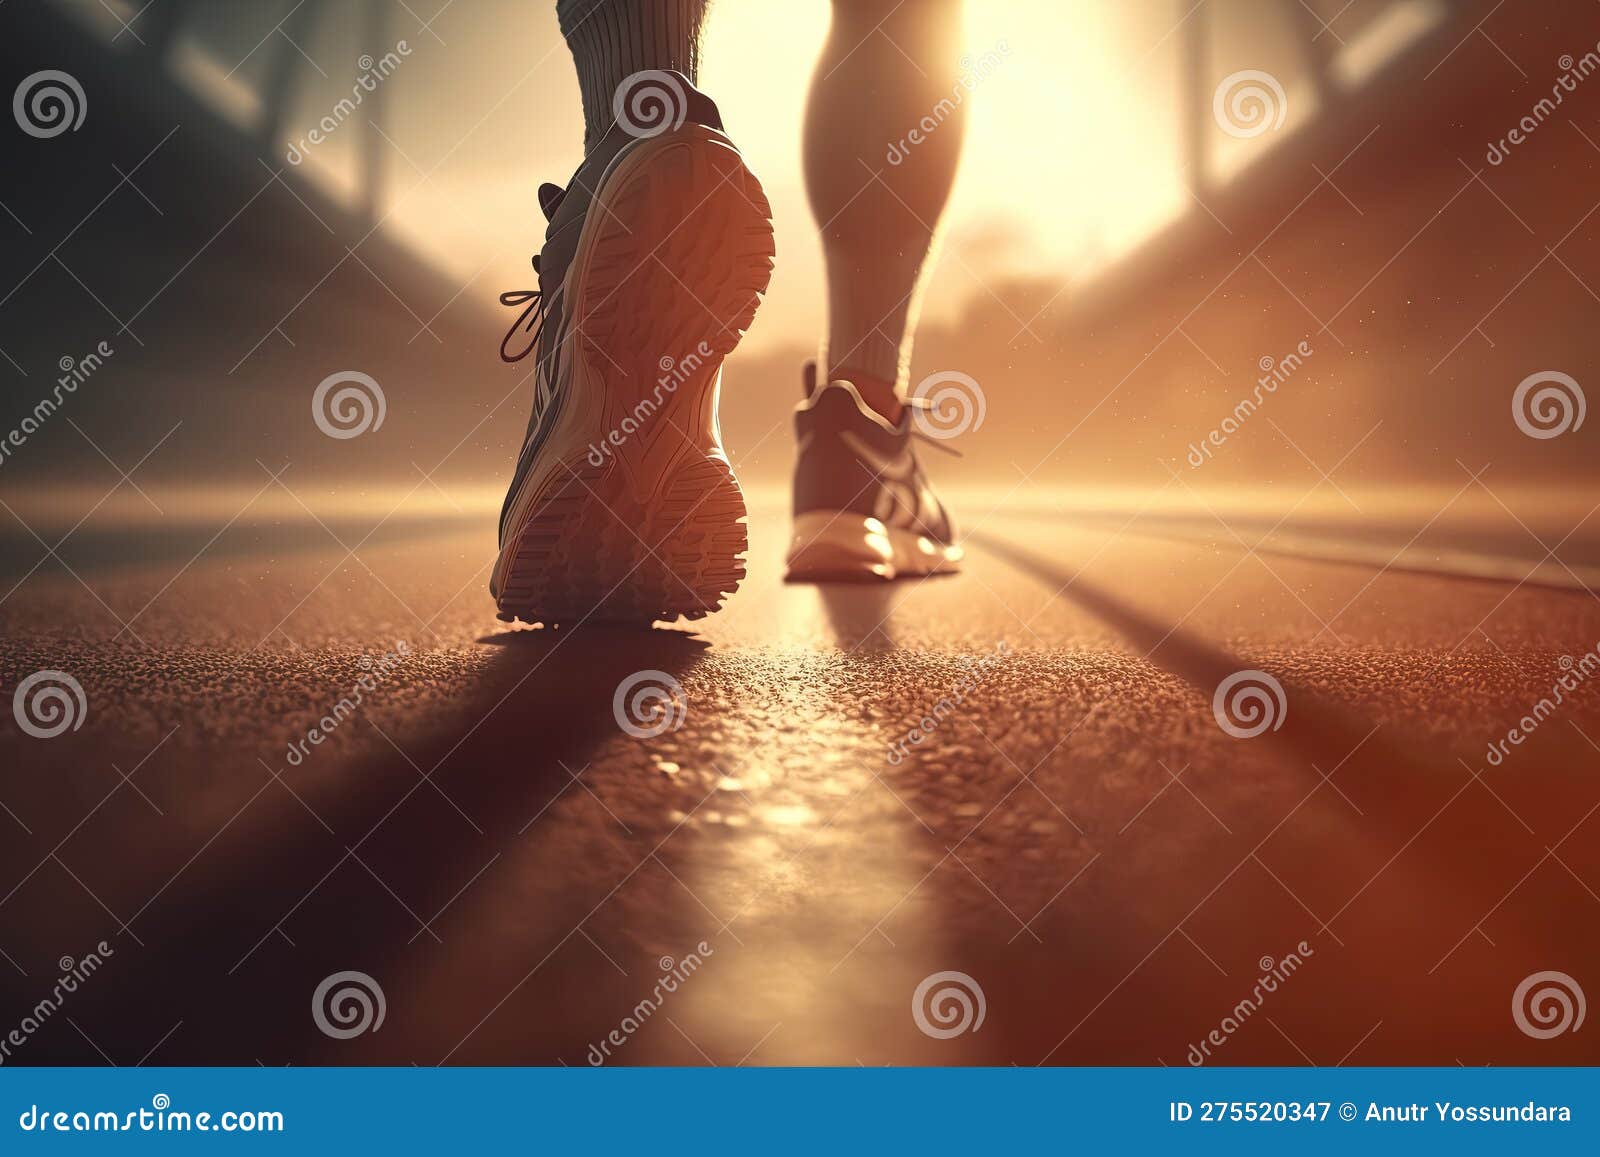 https://thumbs.dreamstime.com/z/pieds-de-course-avec-chaussures-sport-se-pr%C3%A9parant-pour-la-marche-et-courir-l-entra%C3%AEnement-spectaculaire-lumi%C3%A8re-solaire-les-275520347.jpg